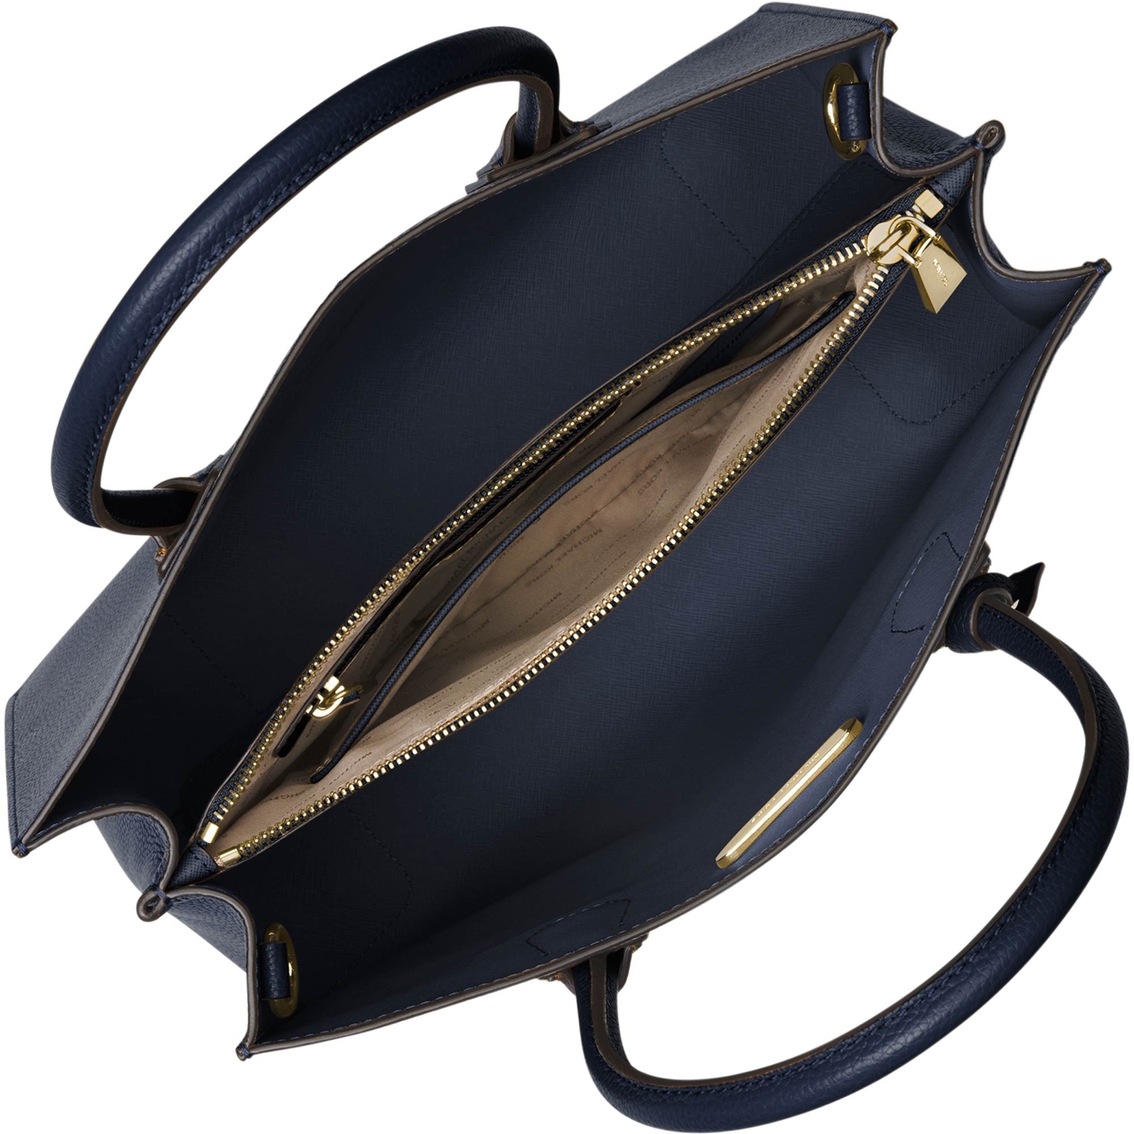 Michael Kors Mercer Large Convertible Tote, Handbags